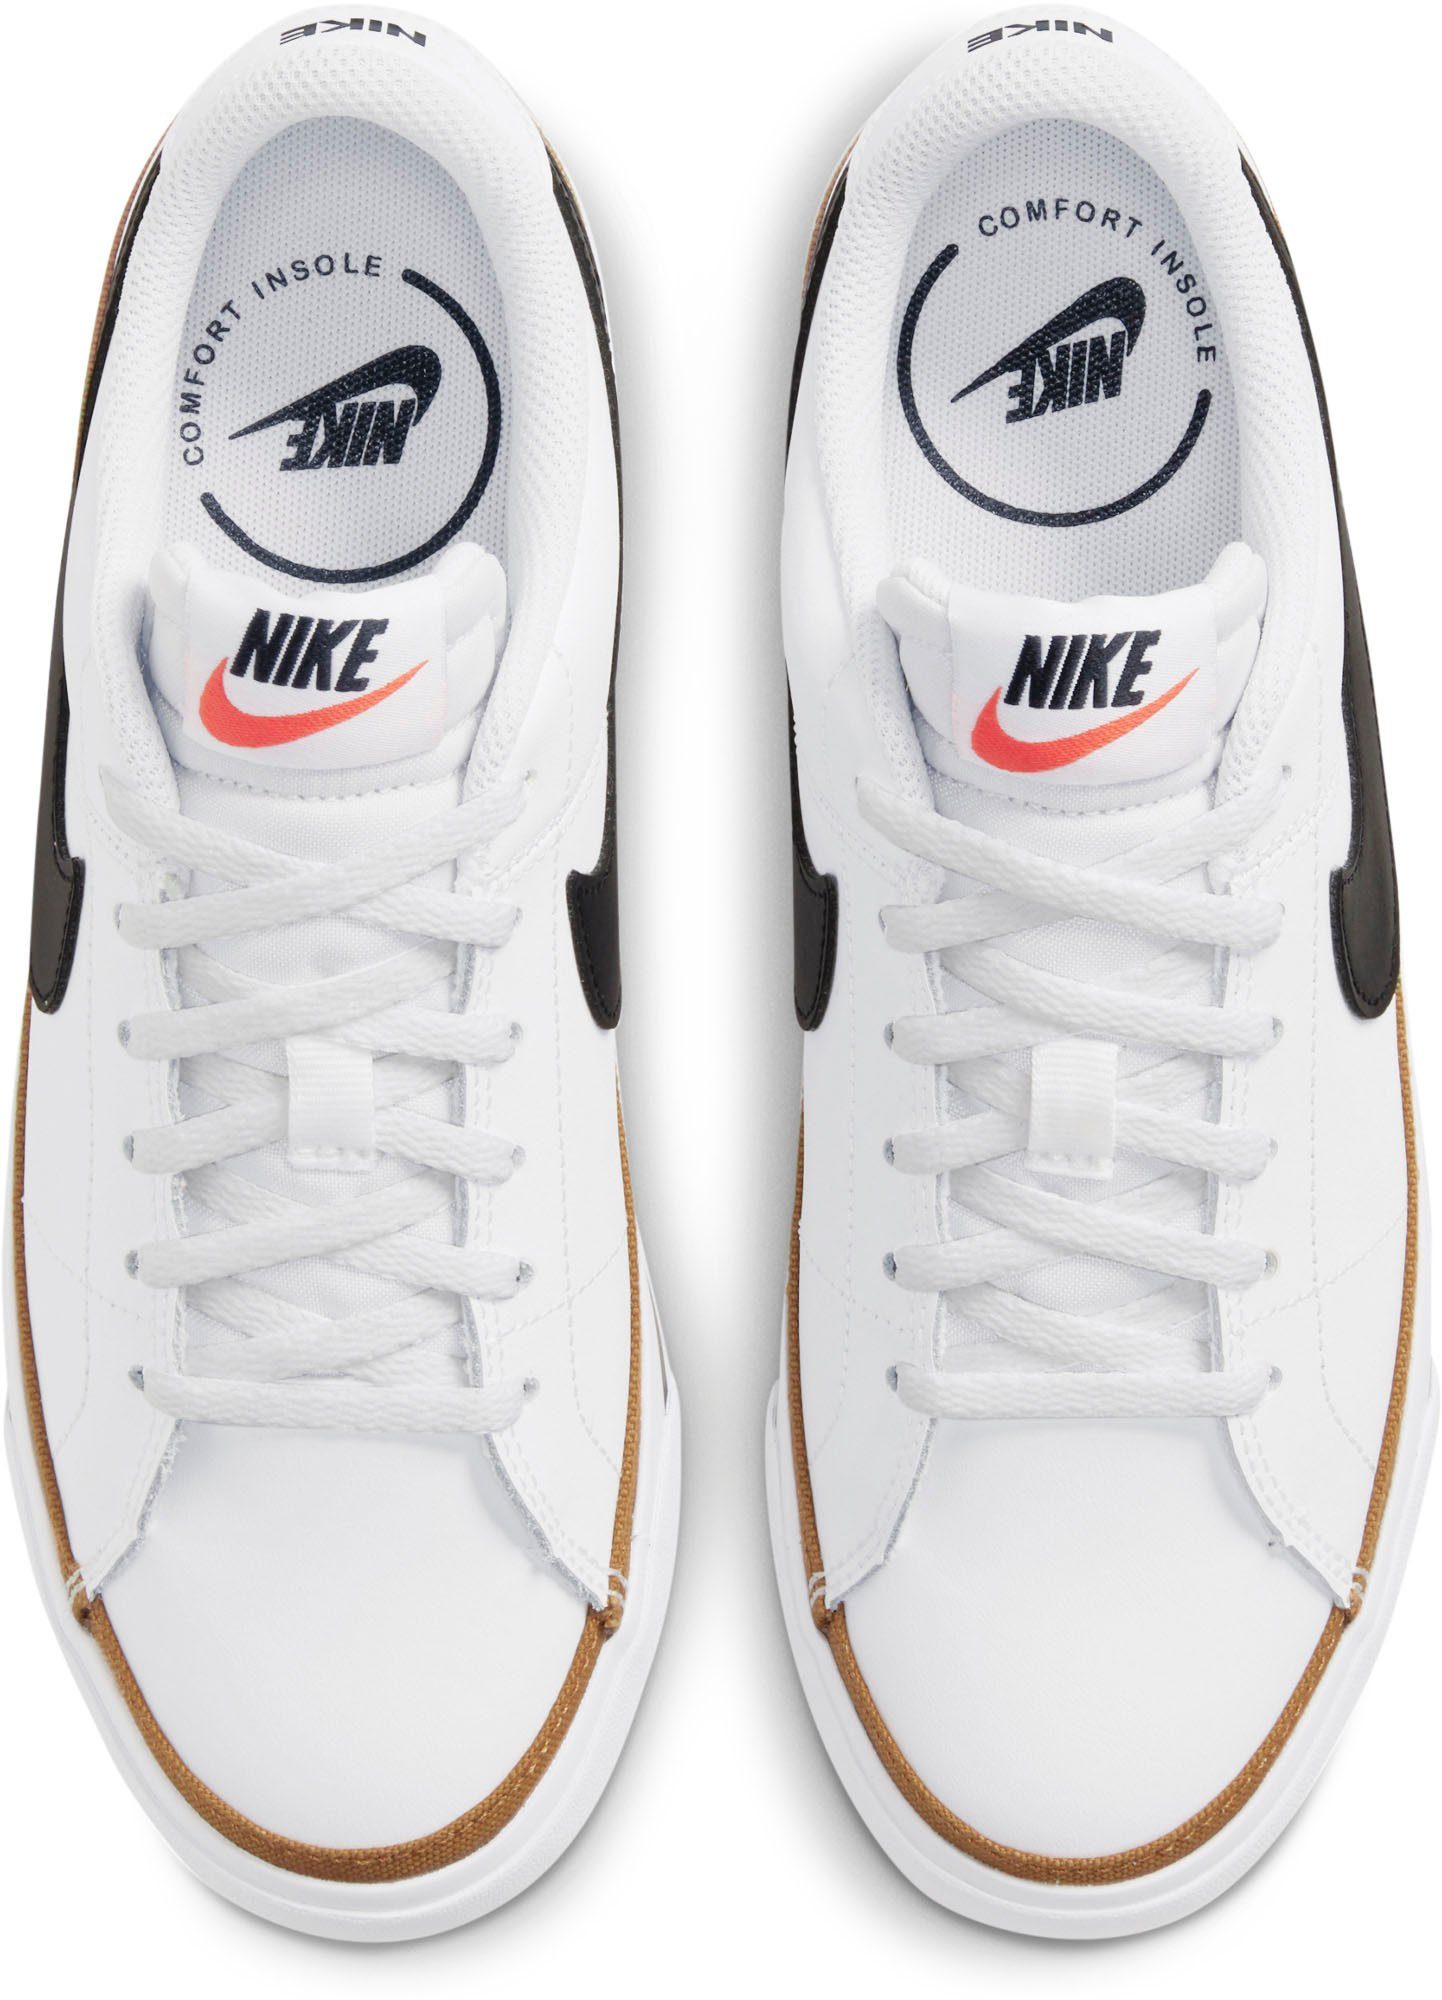 LEGACY Sportswear schwarz Sneaker Nike COURT weiß (GS)